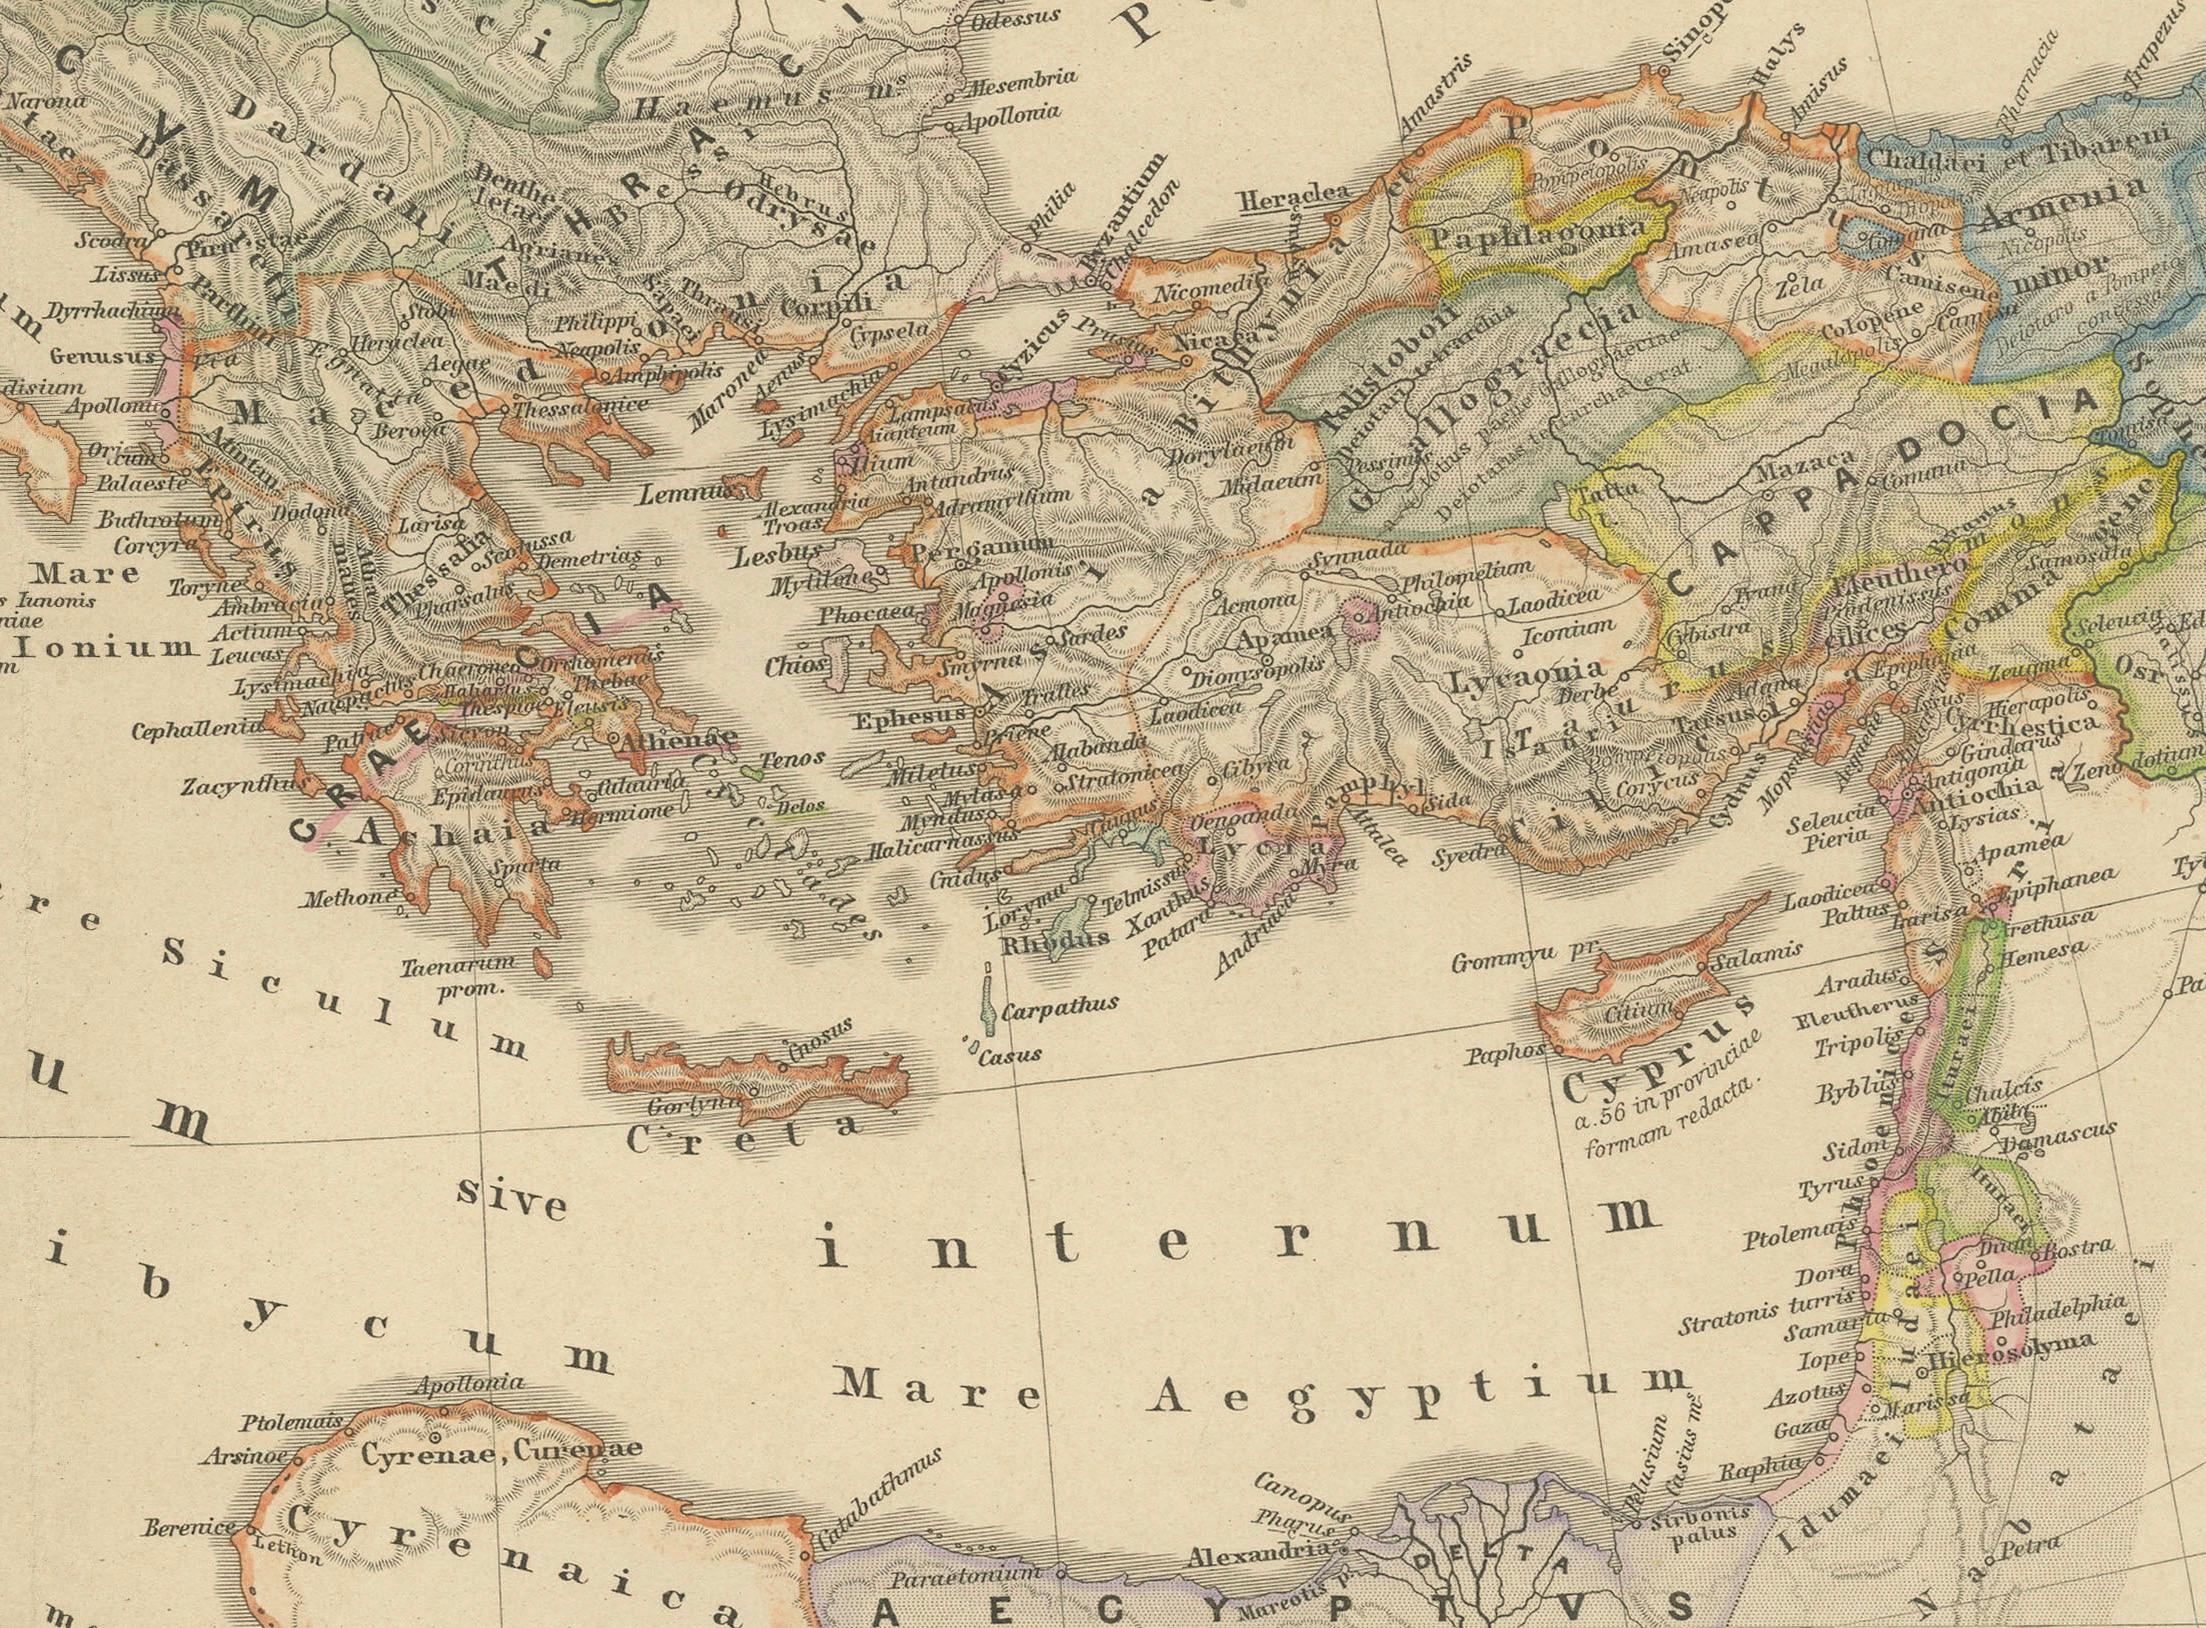 Il s'agit d'une carte historique qui décrit la région méditerranéenne à un moment précis de l'histoire romaine, depuis le retour de Pompée le Grand après sa campagne en Asie mineure jusqu'à la bataille d'Actium, un affrontement décisif qui a conduit